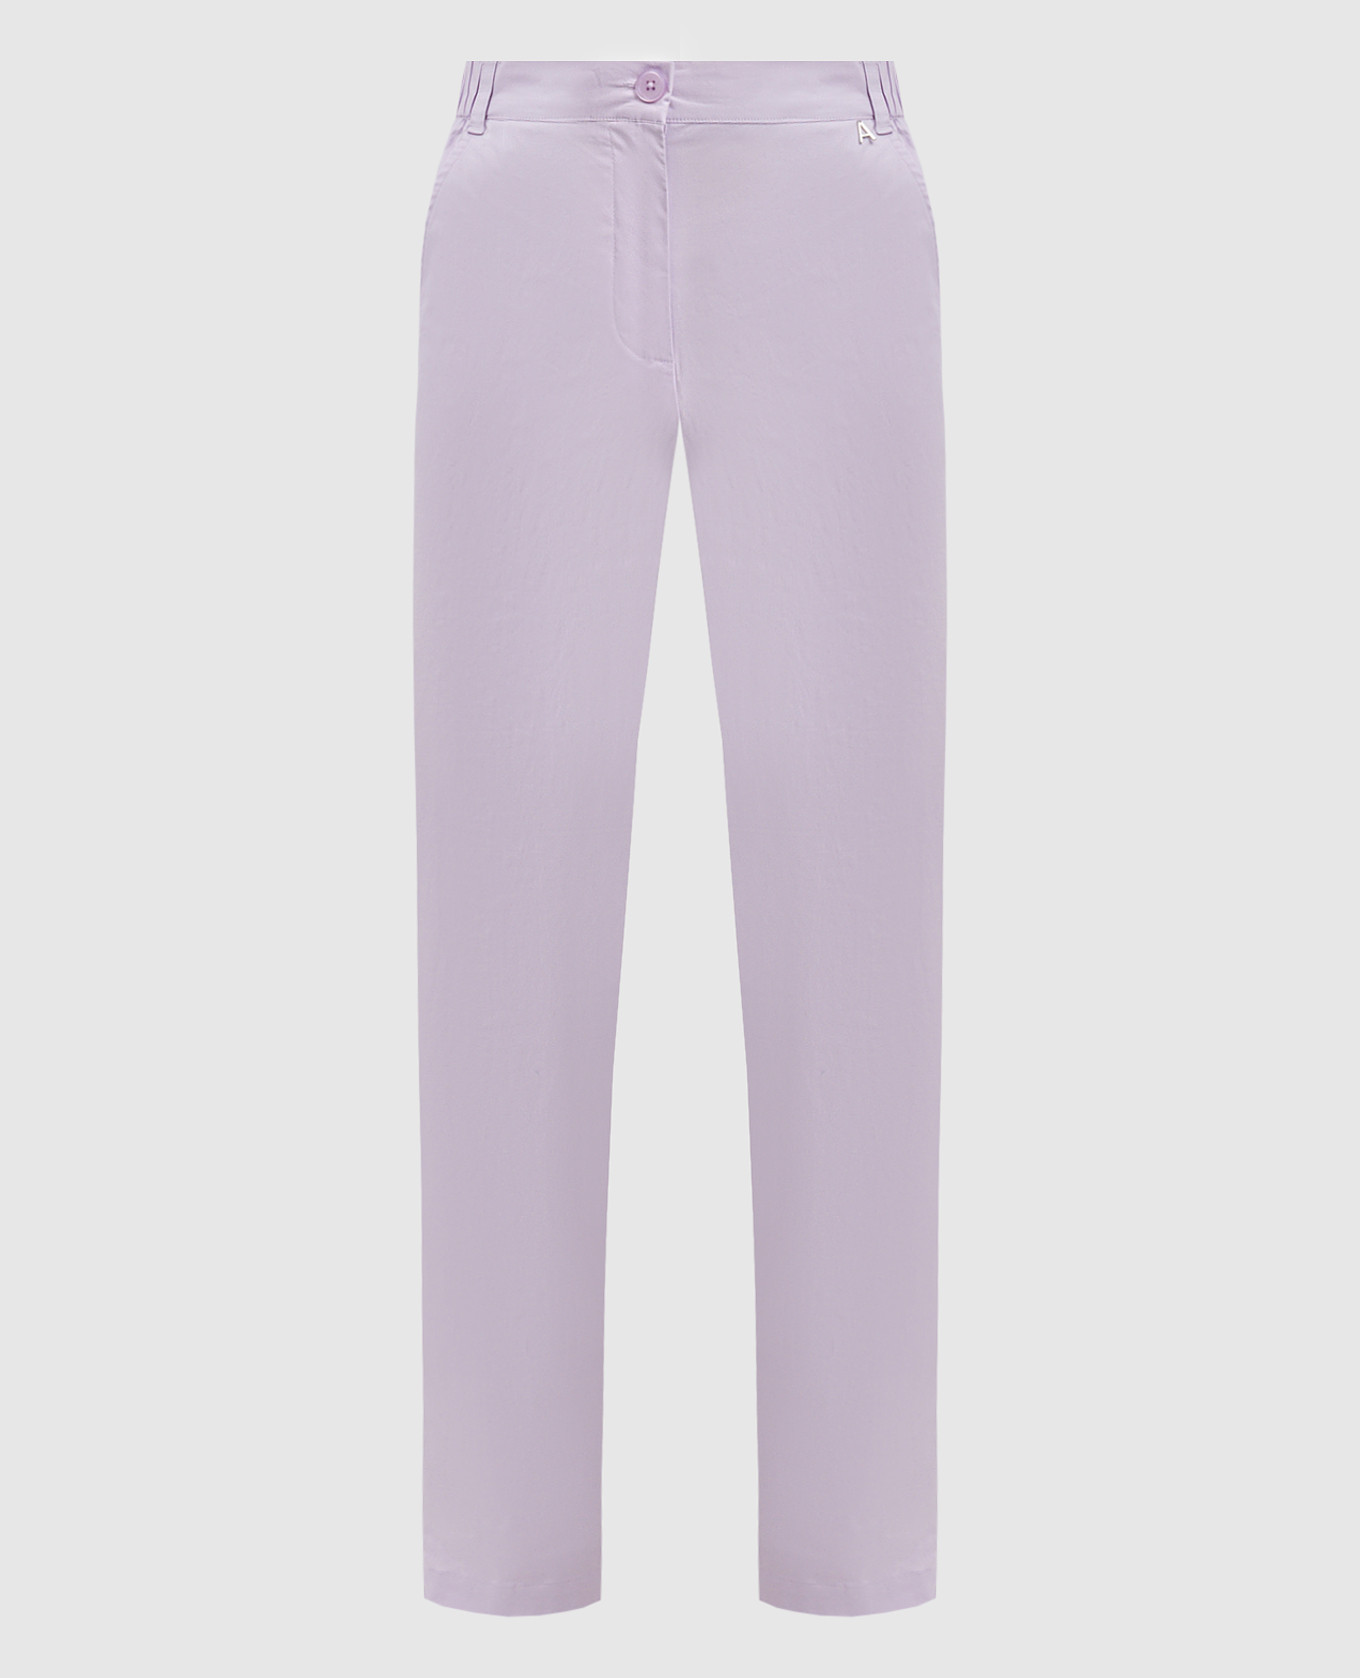 Purple pants with metallic logo